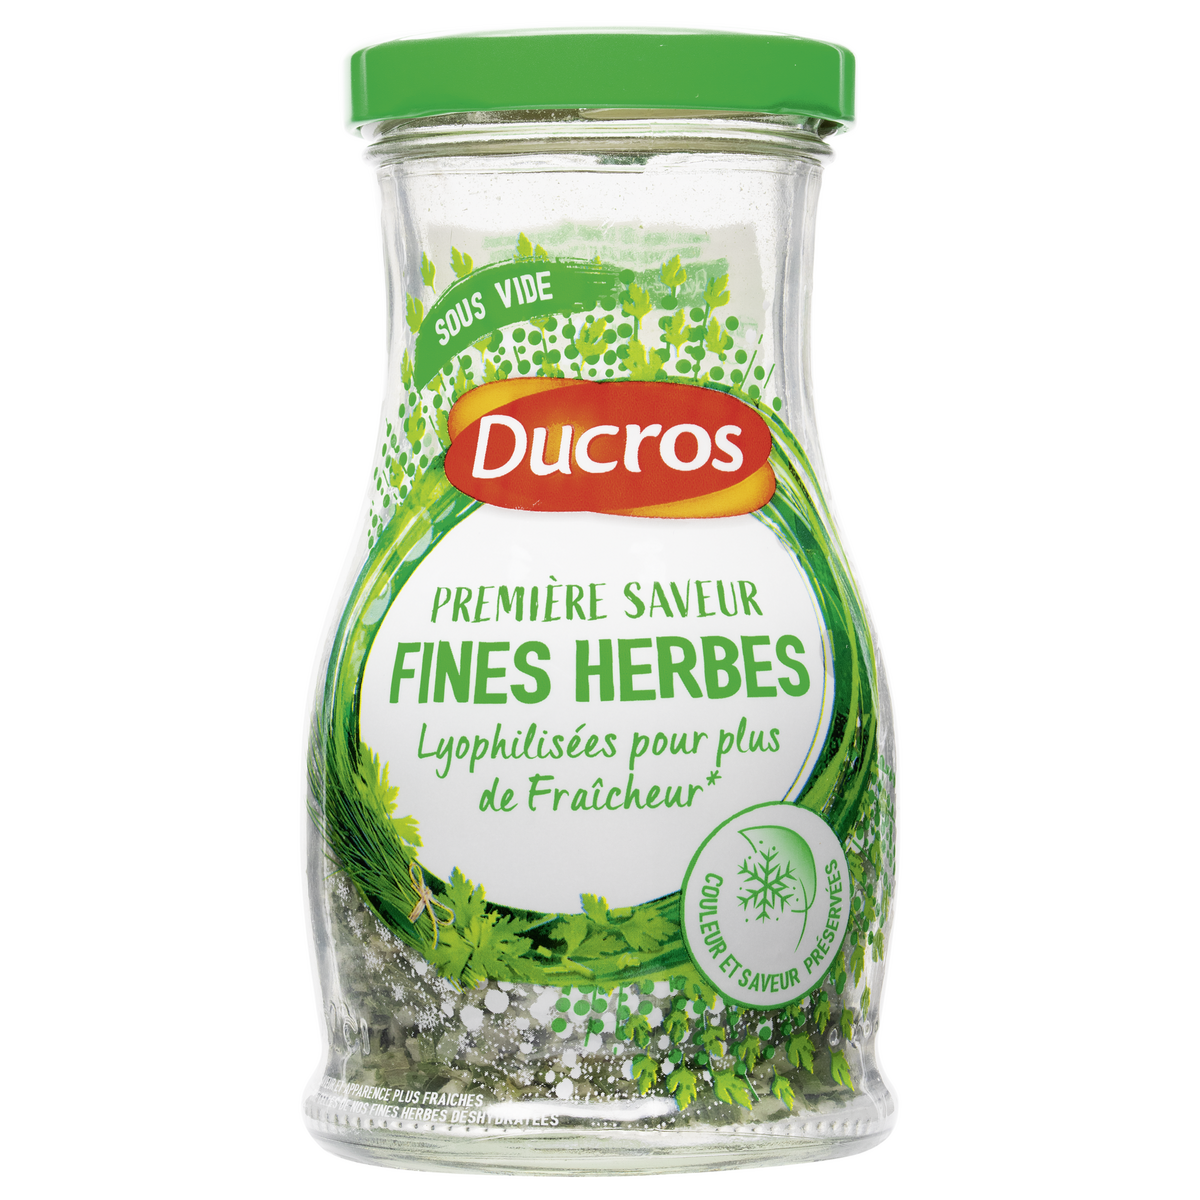 DUCROS Fines herbes 18g